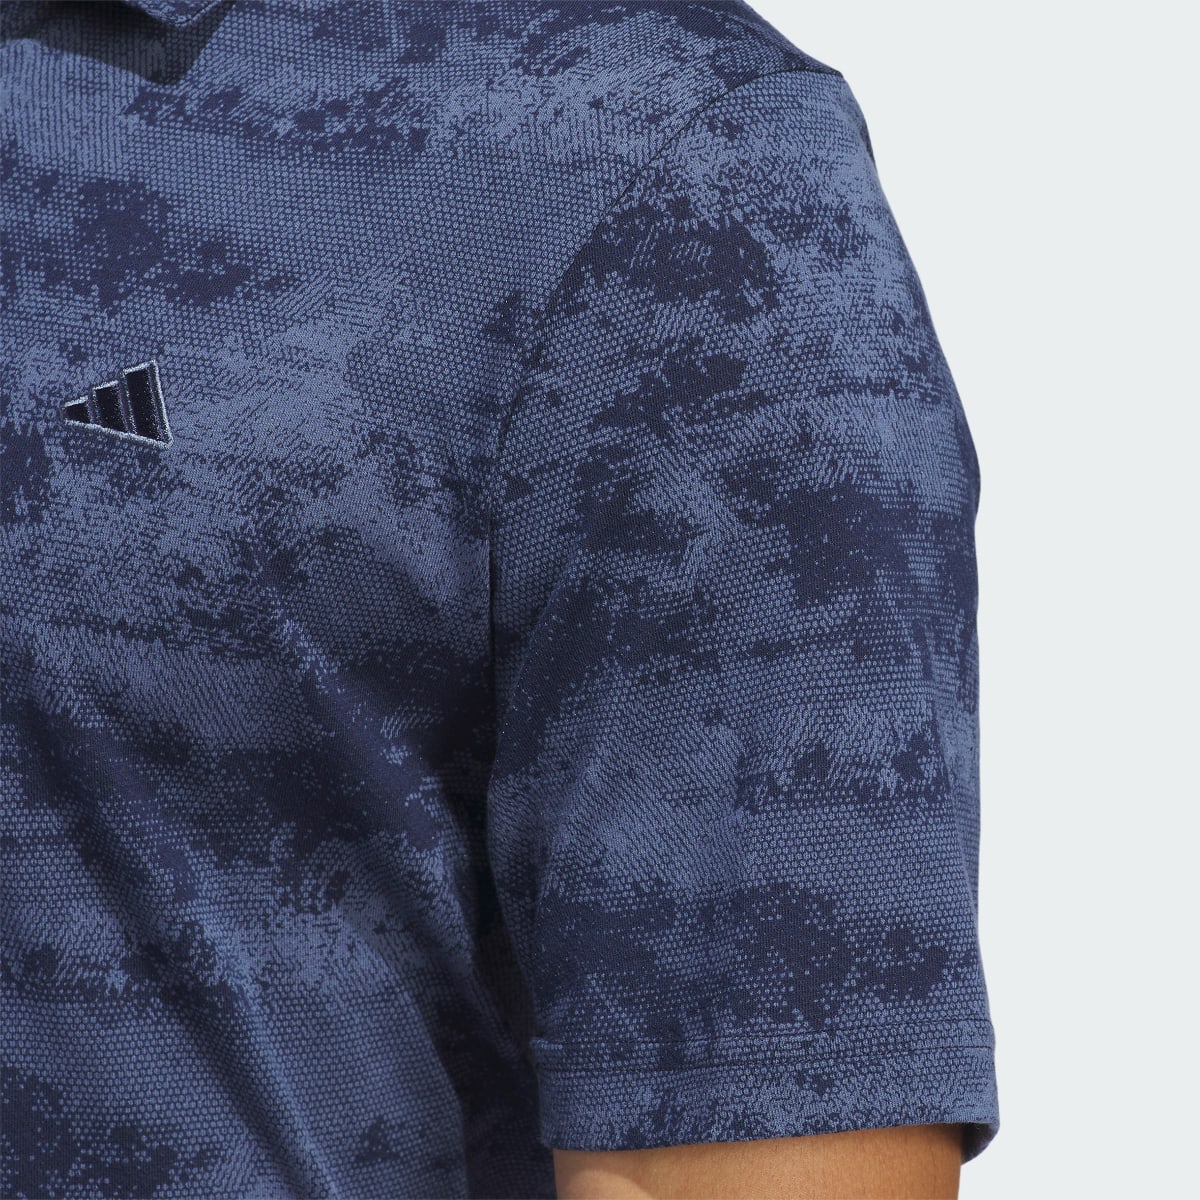 Adidas Go-To Printed Mesh Polo Shirt. 7